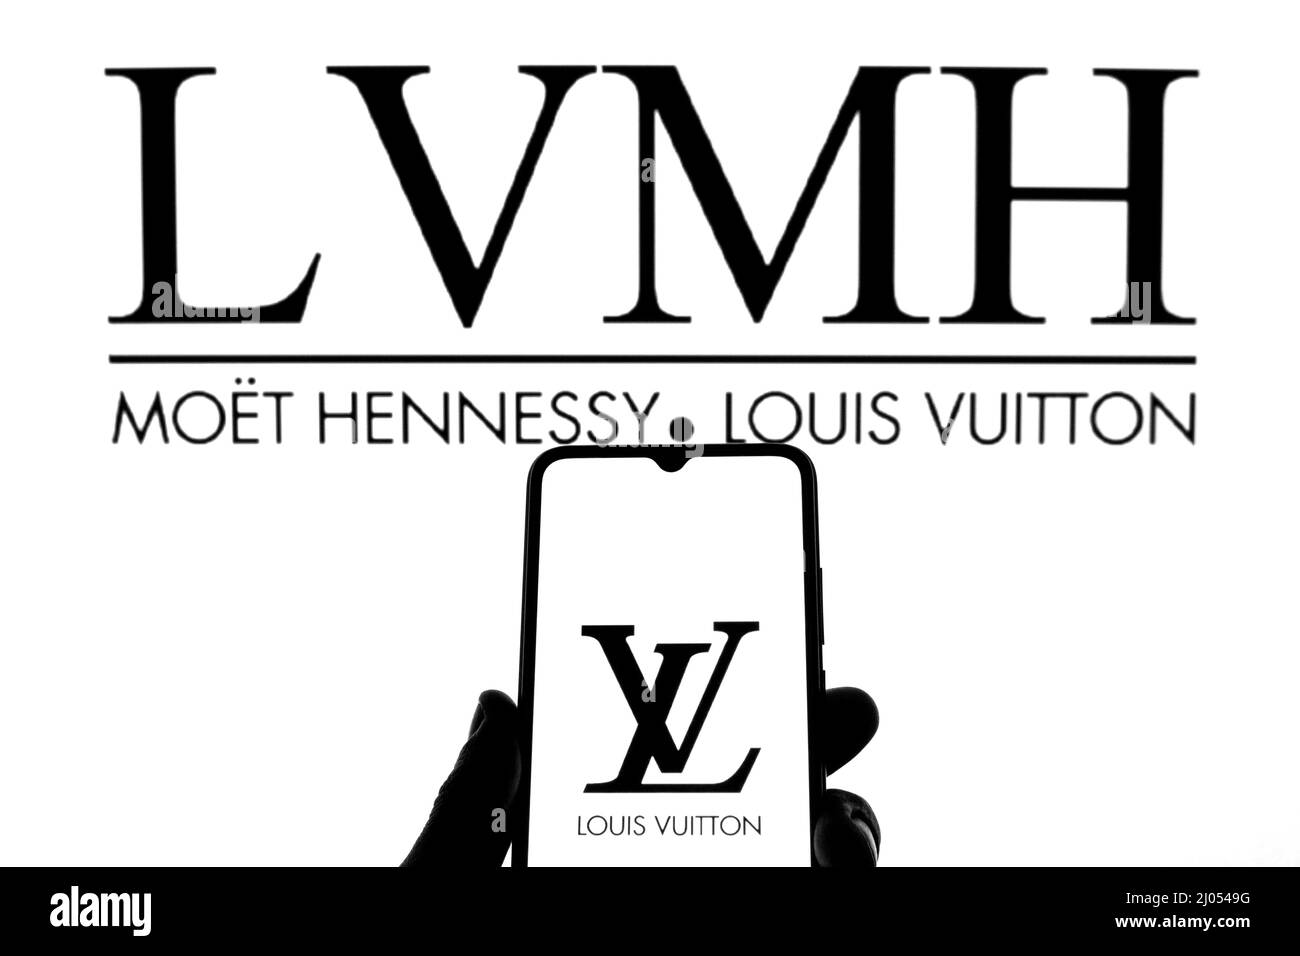 Louis vuitton logo Imágenes de stock en blanco y negro - Alamy